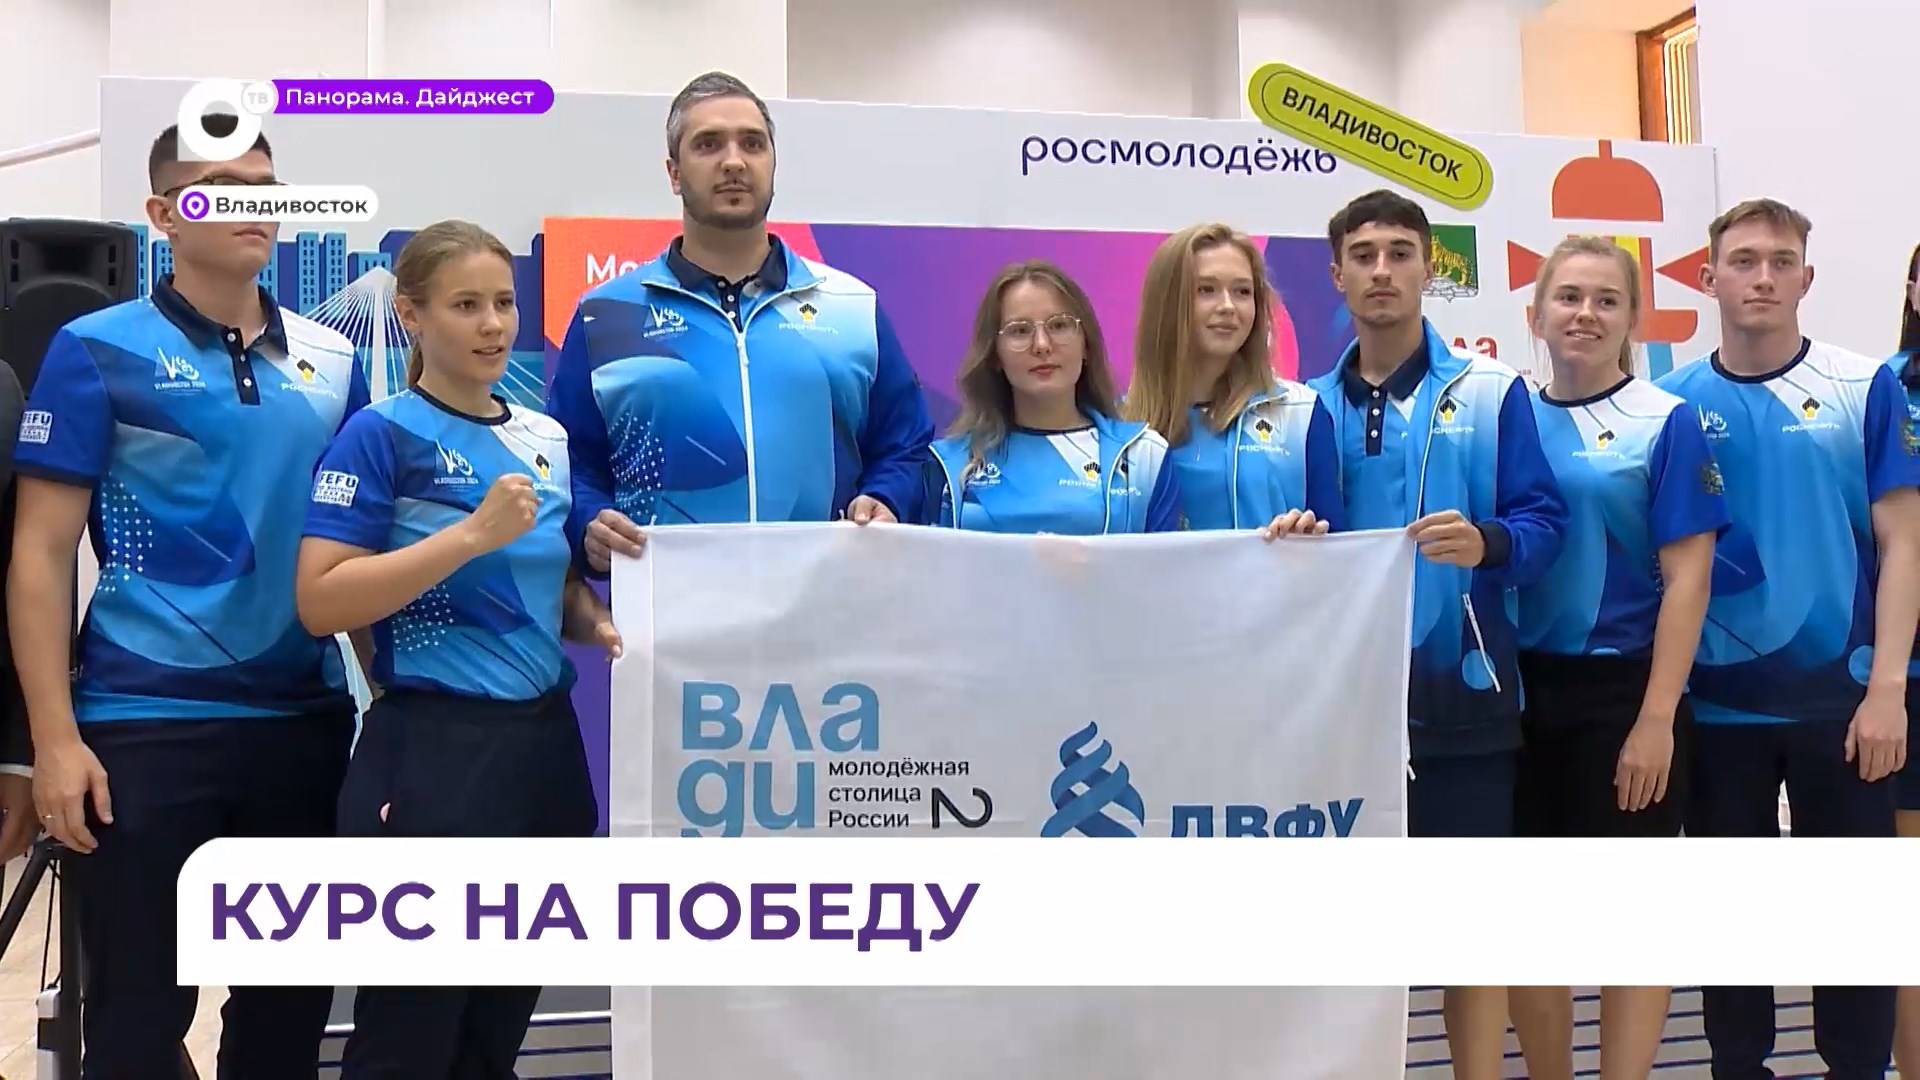 Во Владивостоке прошло торжественное вручение именных флагов Международных студенческих игр